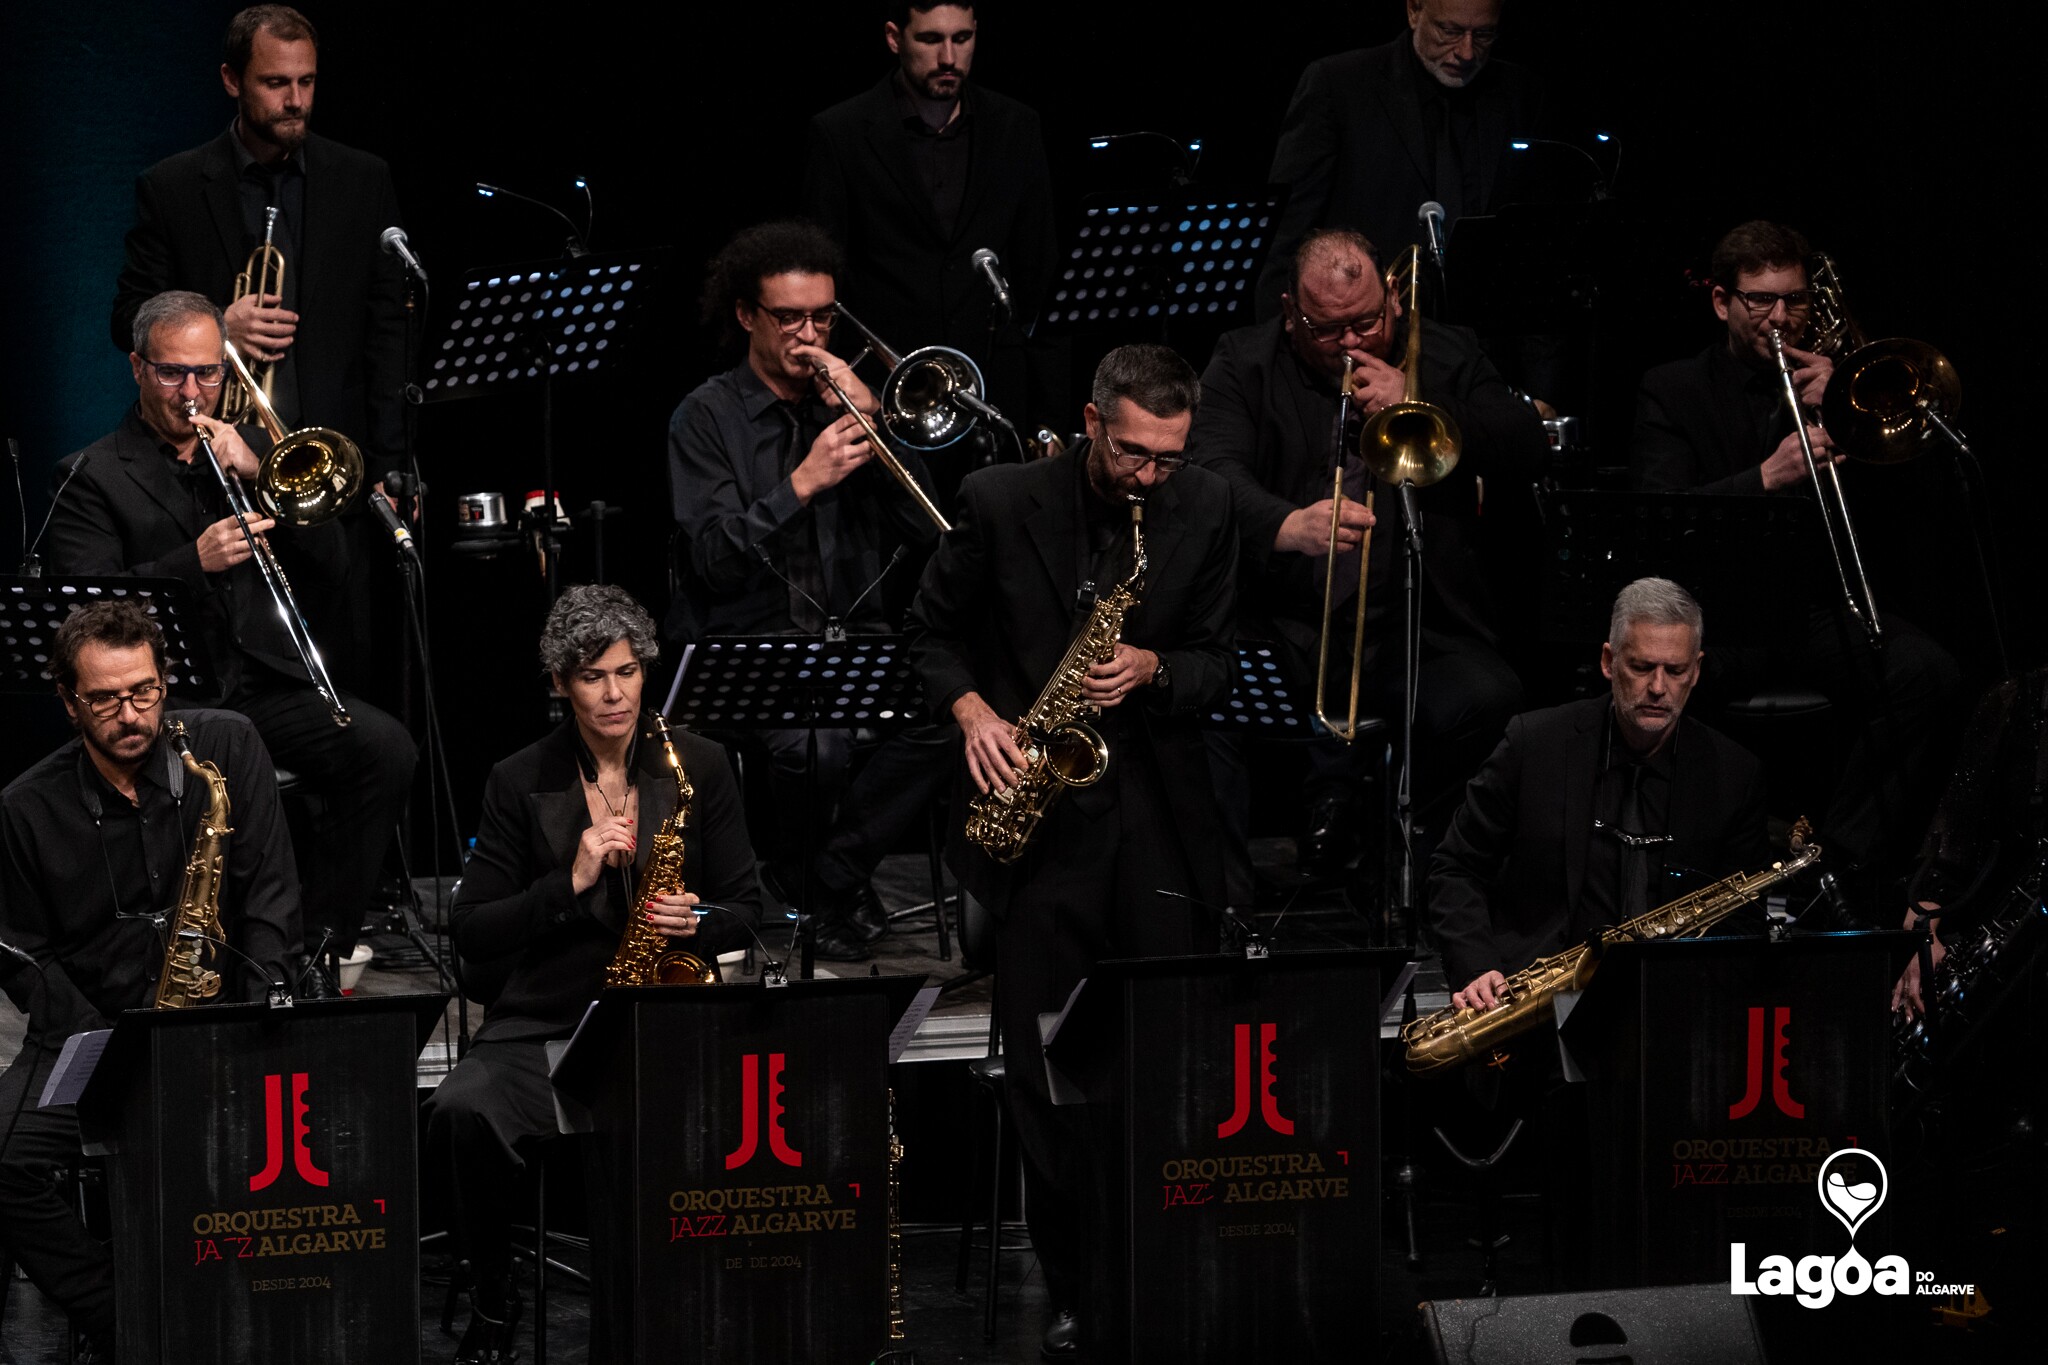 Orquestra de Jazz do algarve | "A Christmas Story"